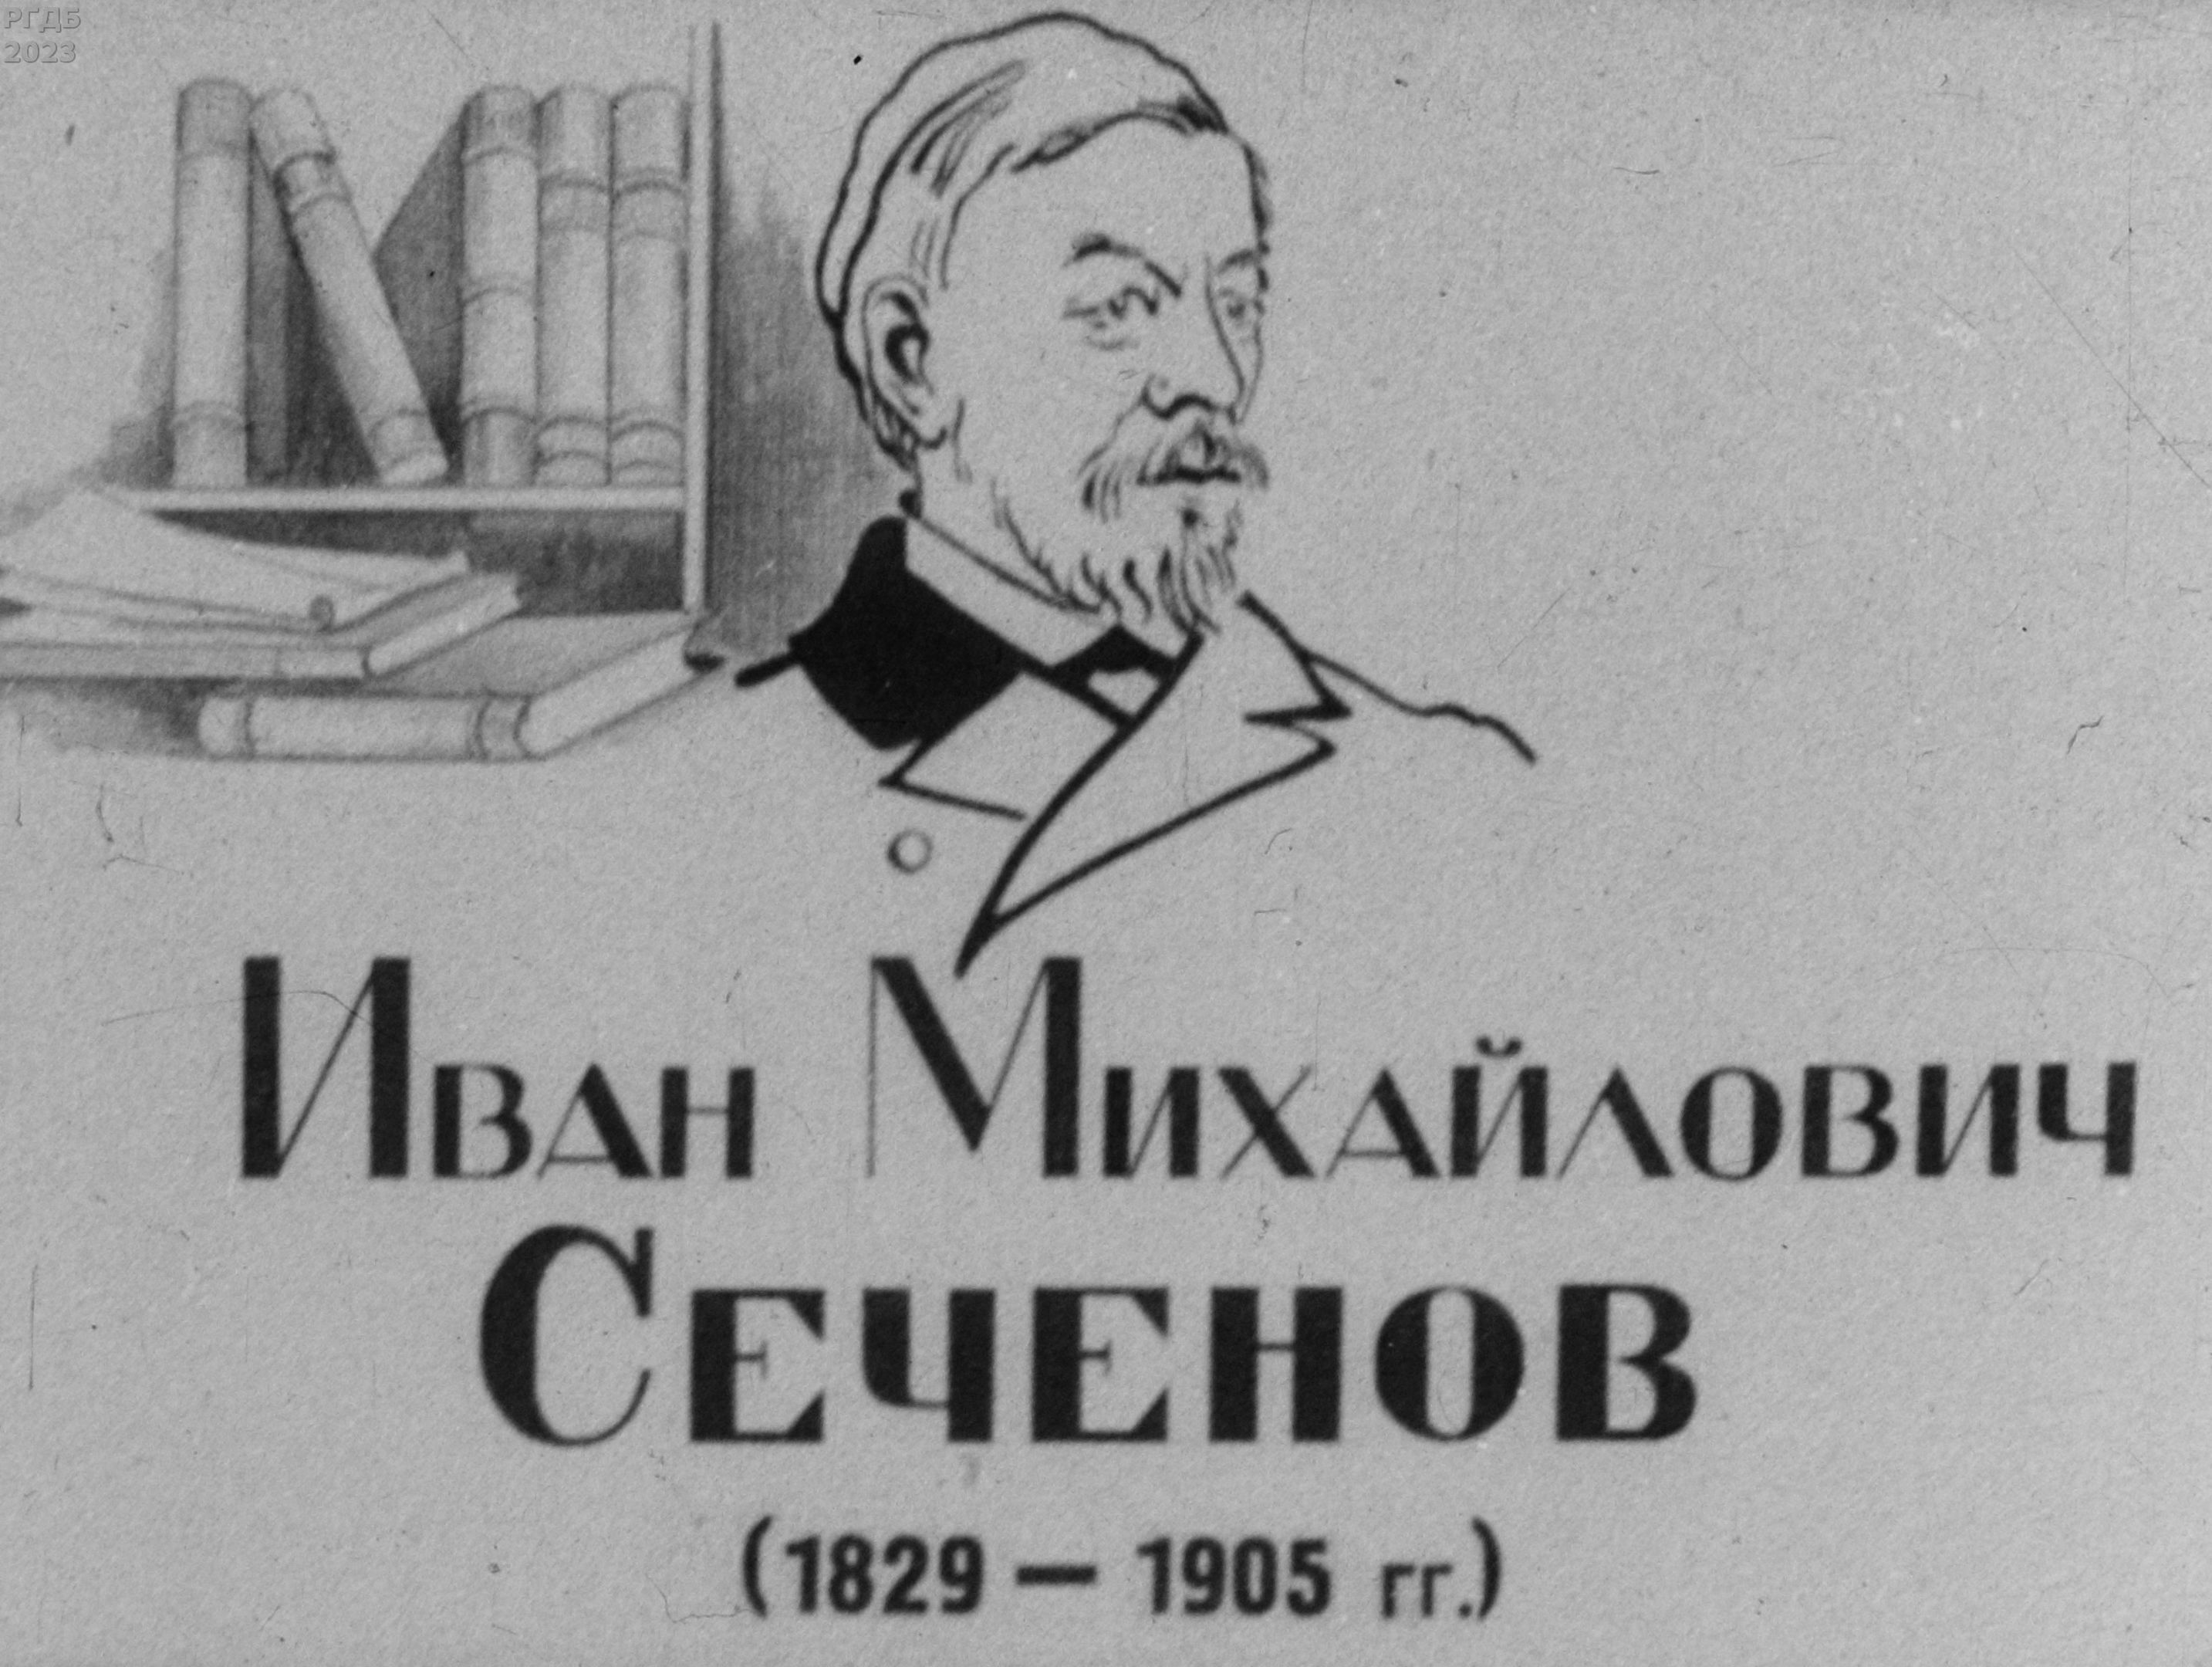 Иван Михайлович Сеченов (1829-1905 гг.)